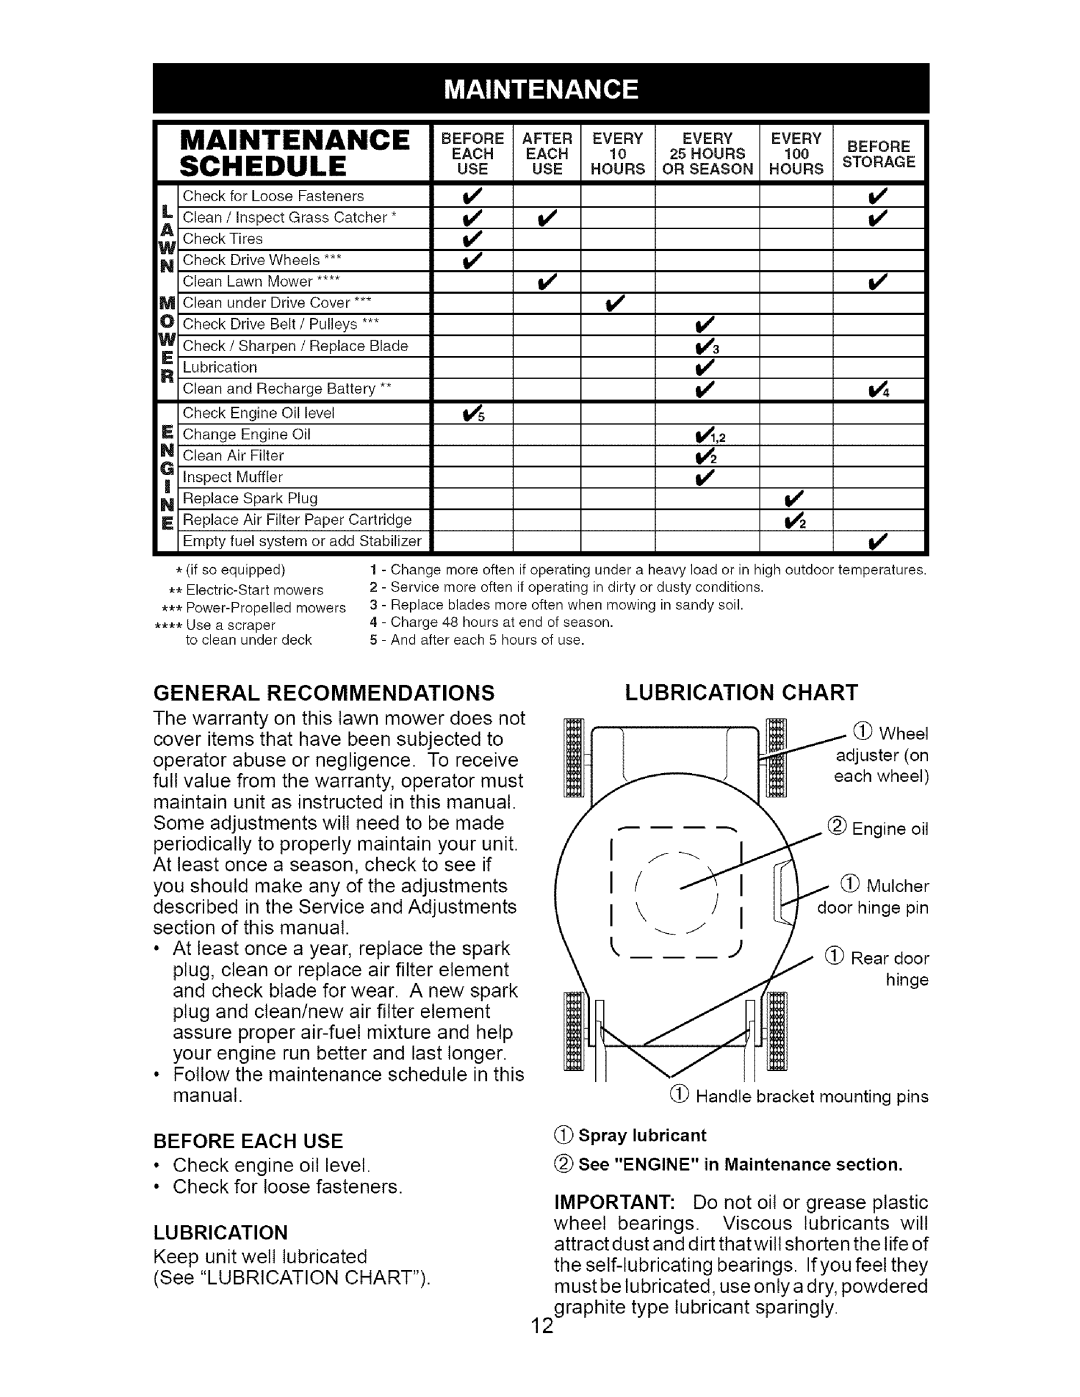 Craftsman 917.37172 Schedule, vv v v3 vl, General, Recommendations, Lu Brication, See ENGINE in Maintenance section 